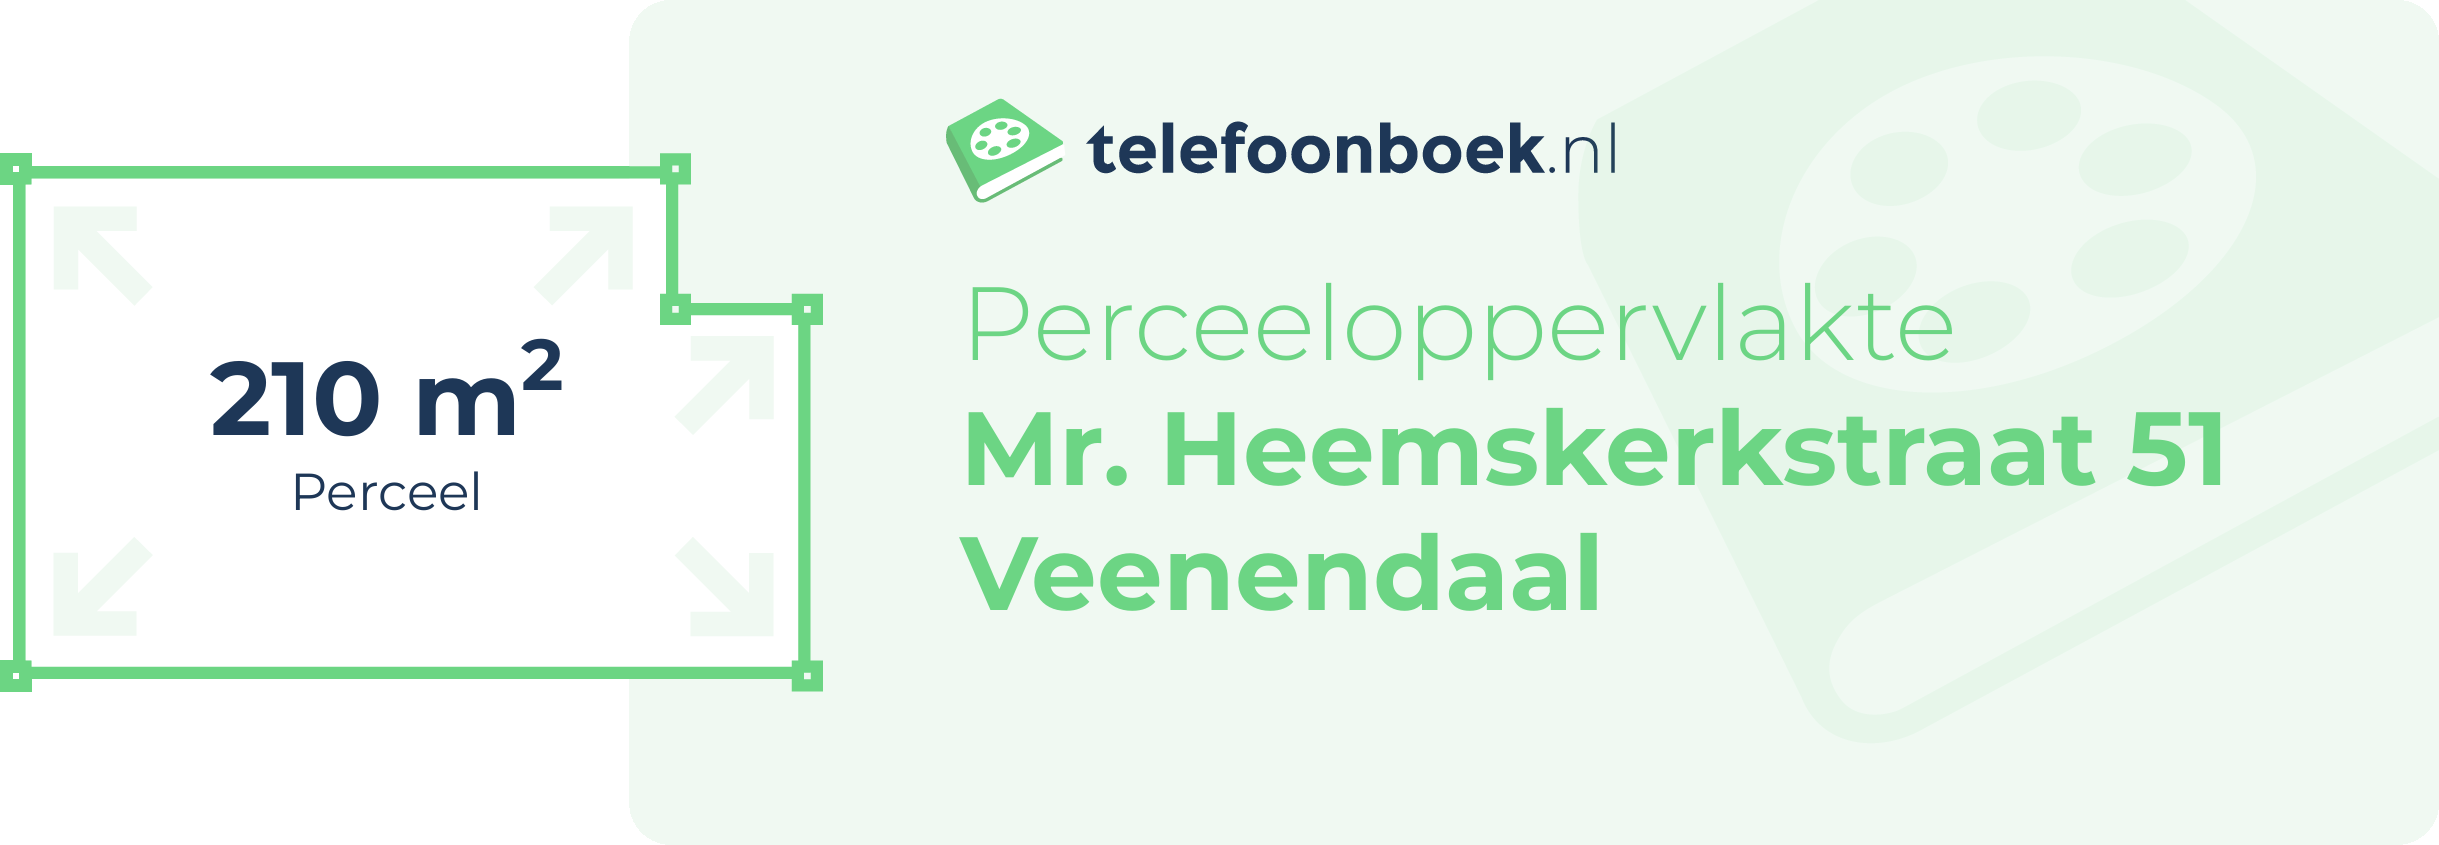 Perceeloppervlakte Mr. Heemskerkstraat 51 Veenendaal